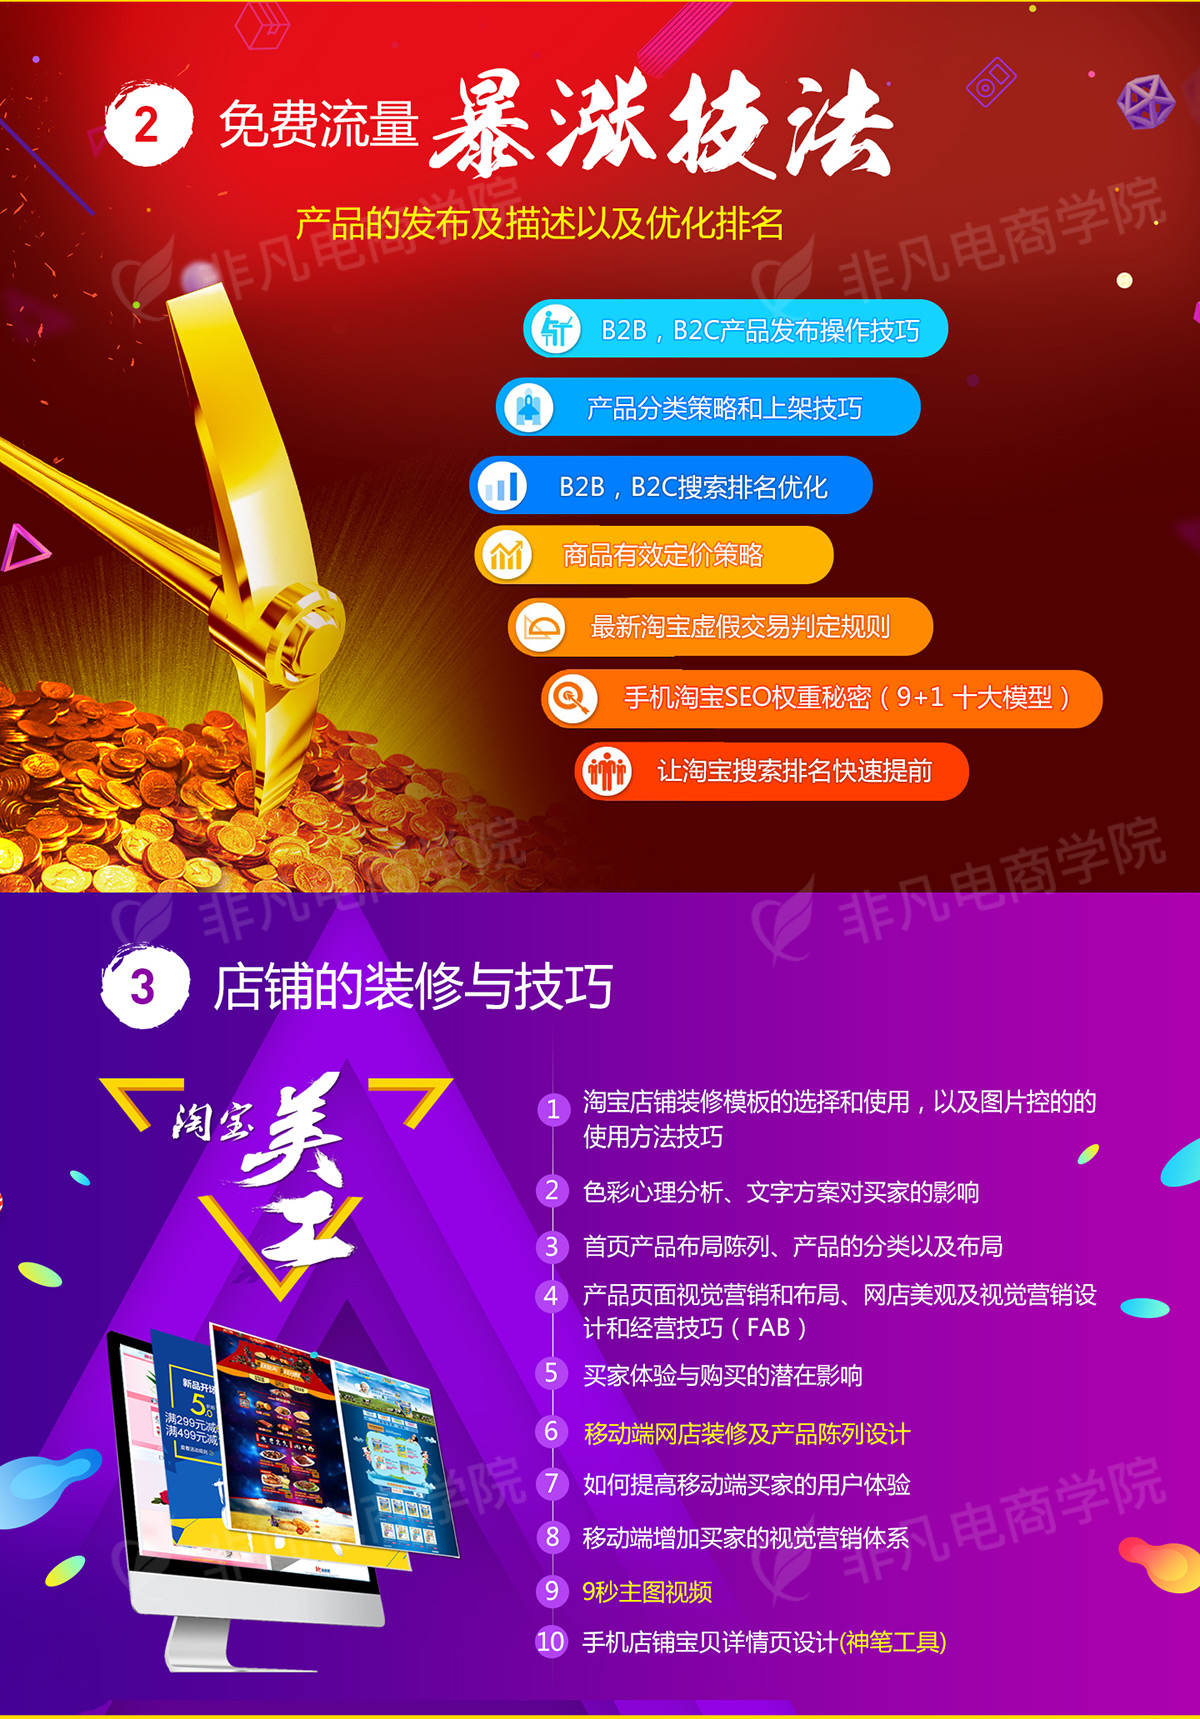 上海网站制作公司_上海最高端的网站制作公司_上海制作网页公司